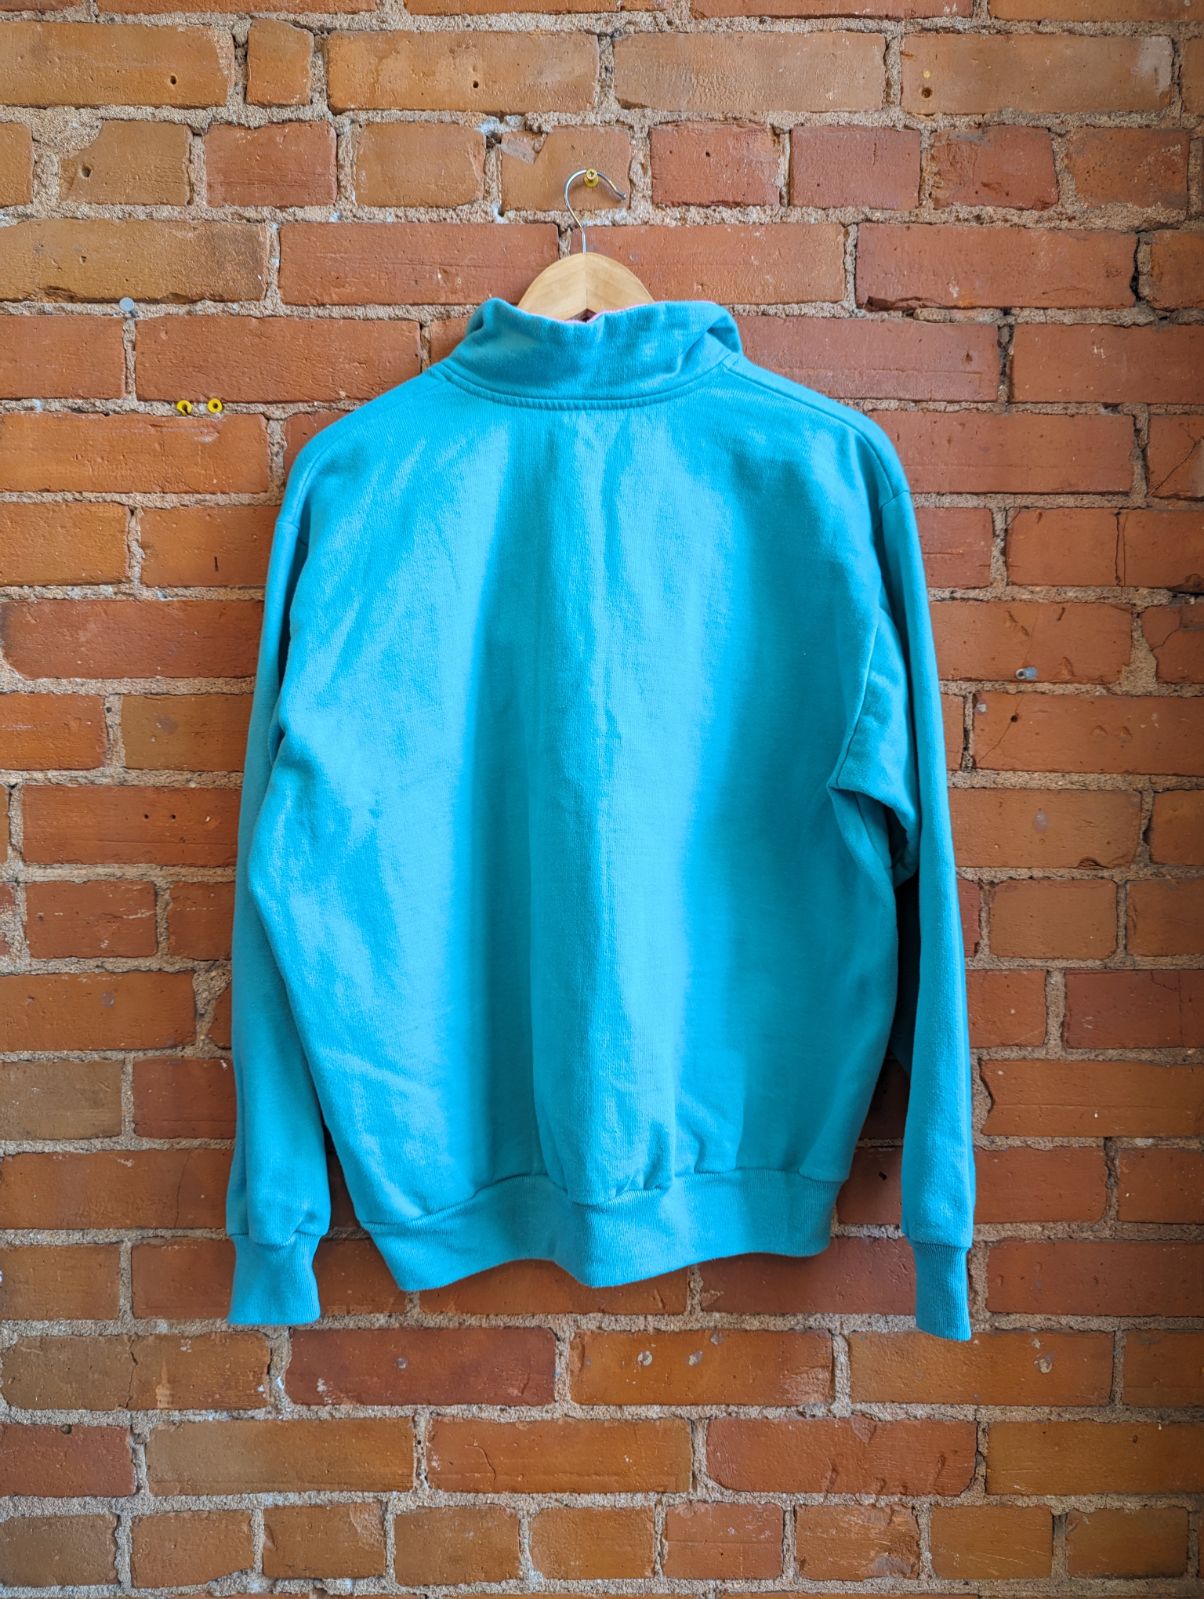 90's Northern Reflections Teal & Pink 1/4 Zip Sweatshirt